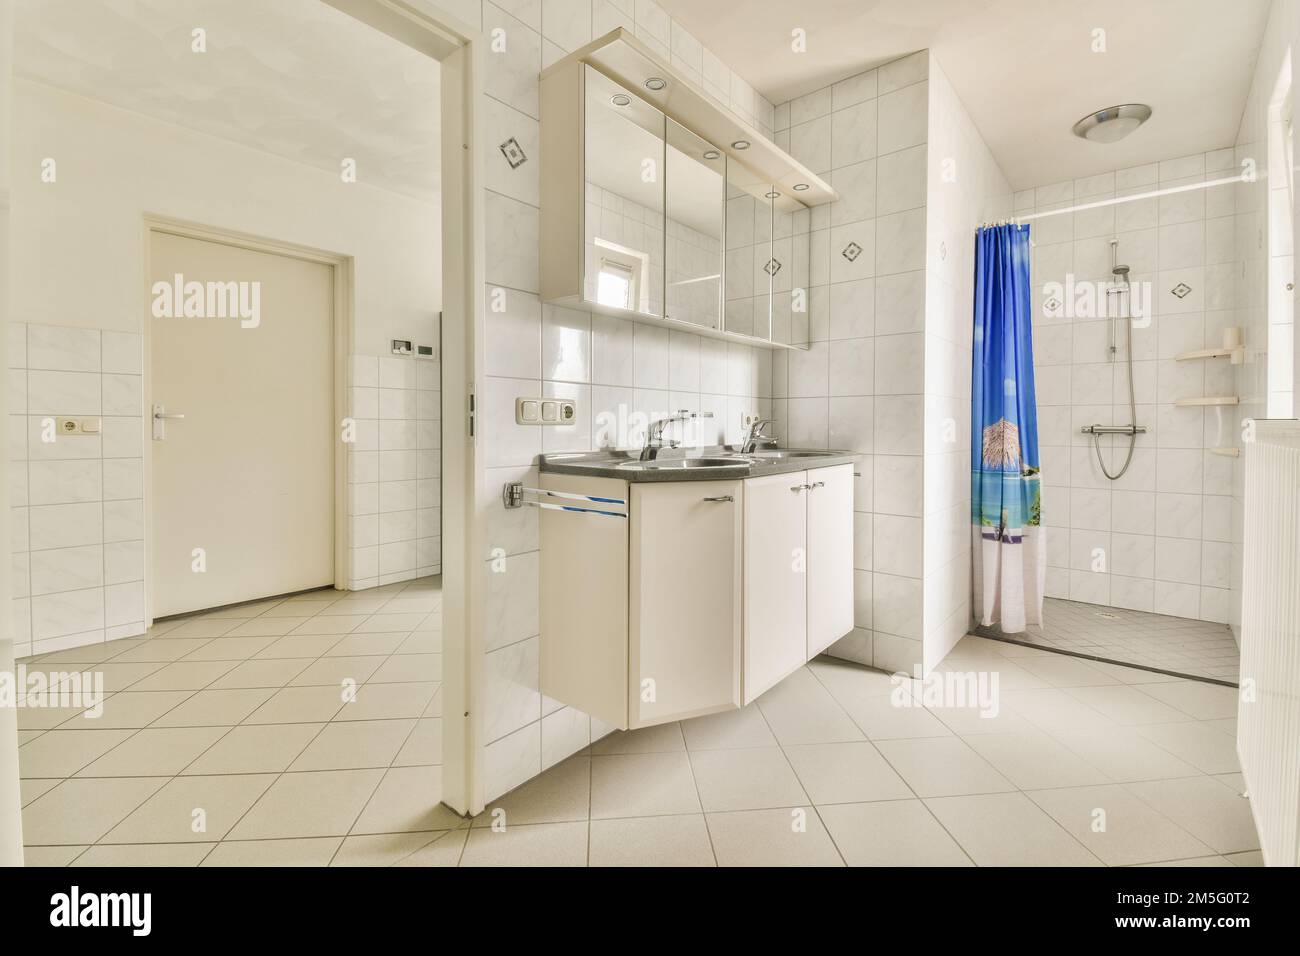 Ein Badezimmer mit weißen Fliesen und blauem Duschvorhang am Fenster vor dem Waschbecken Stockfoto